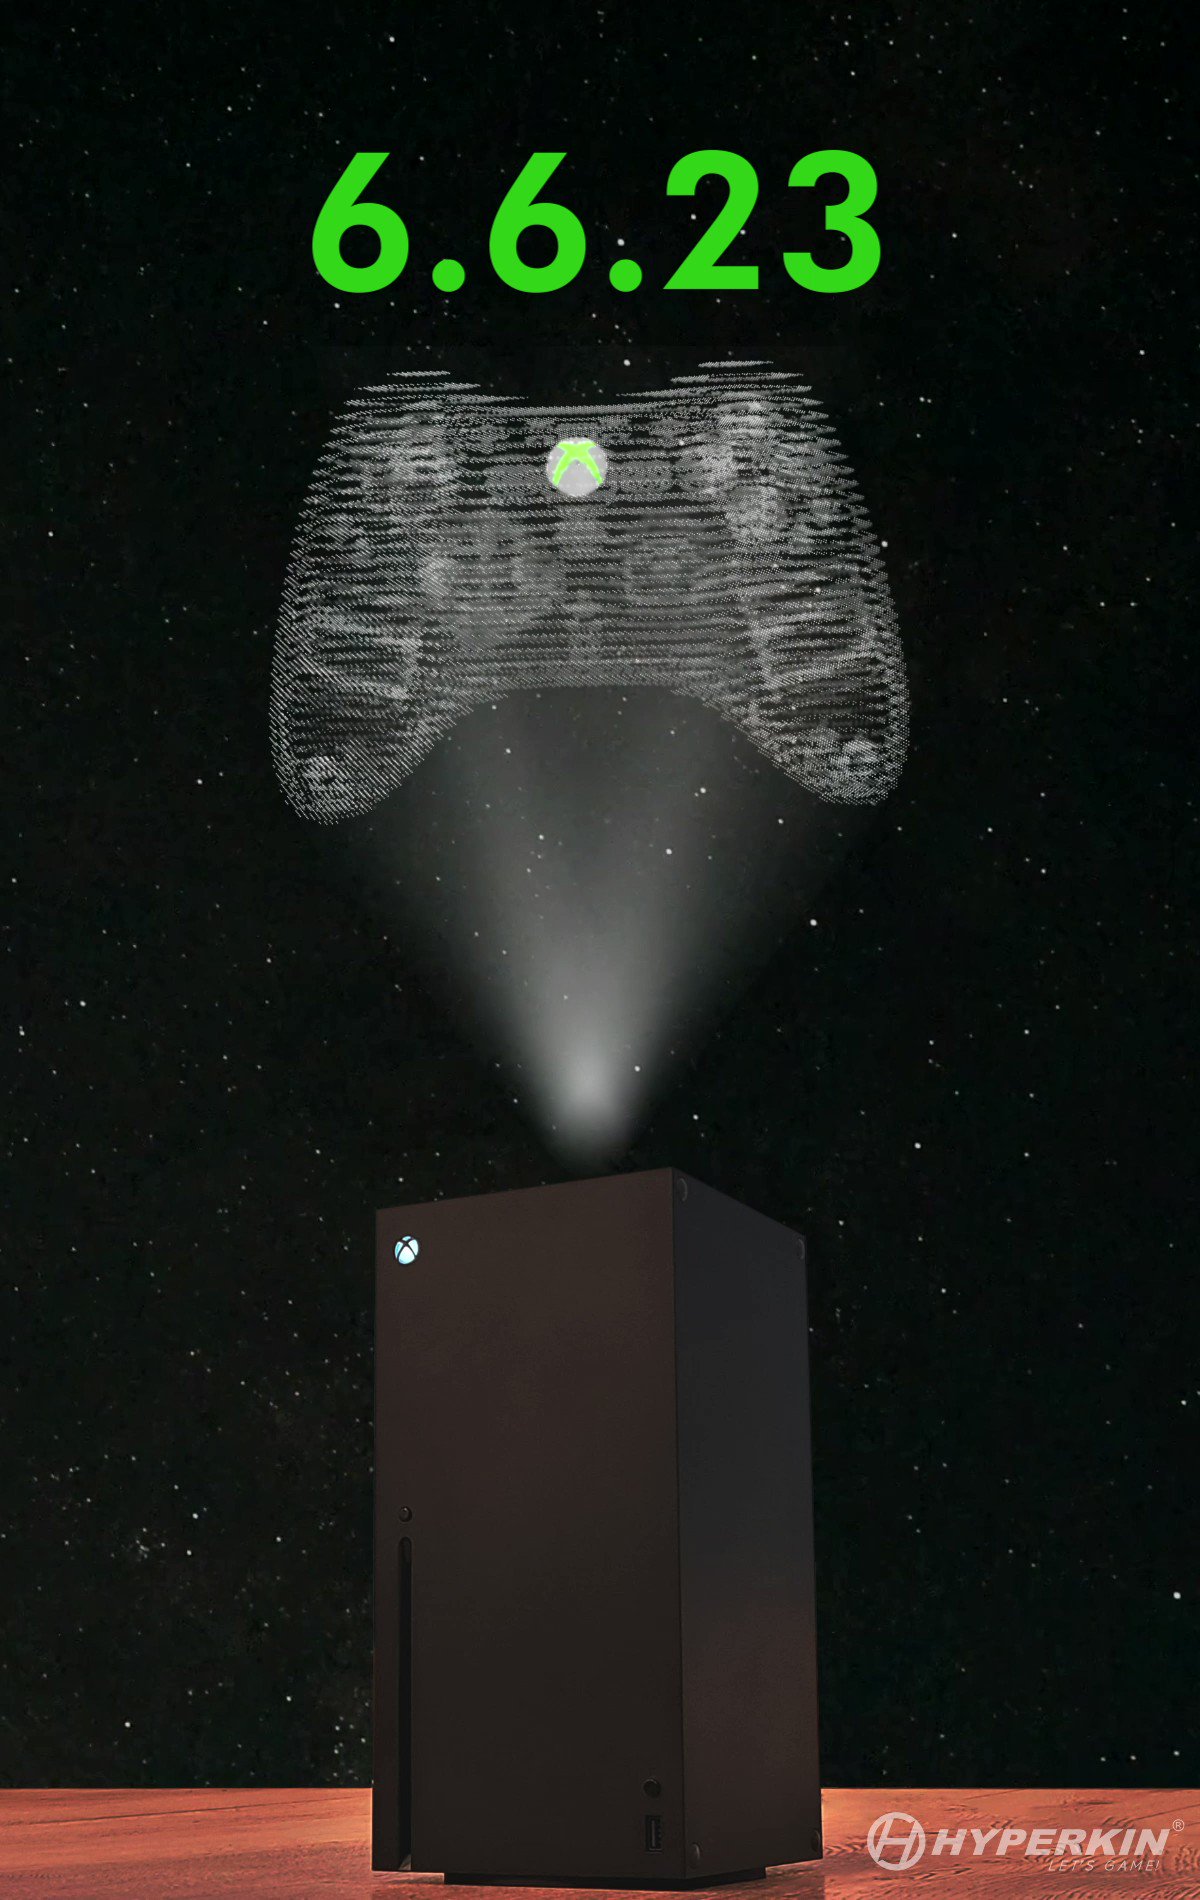 Hyperkin on X: The Xenon, a replica of the official #Xbox 360